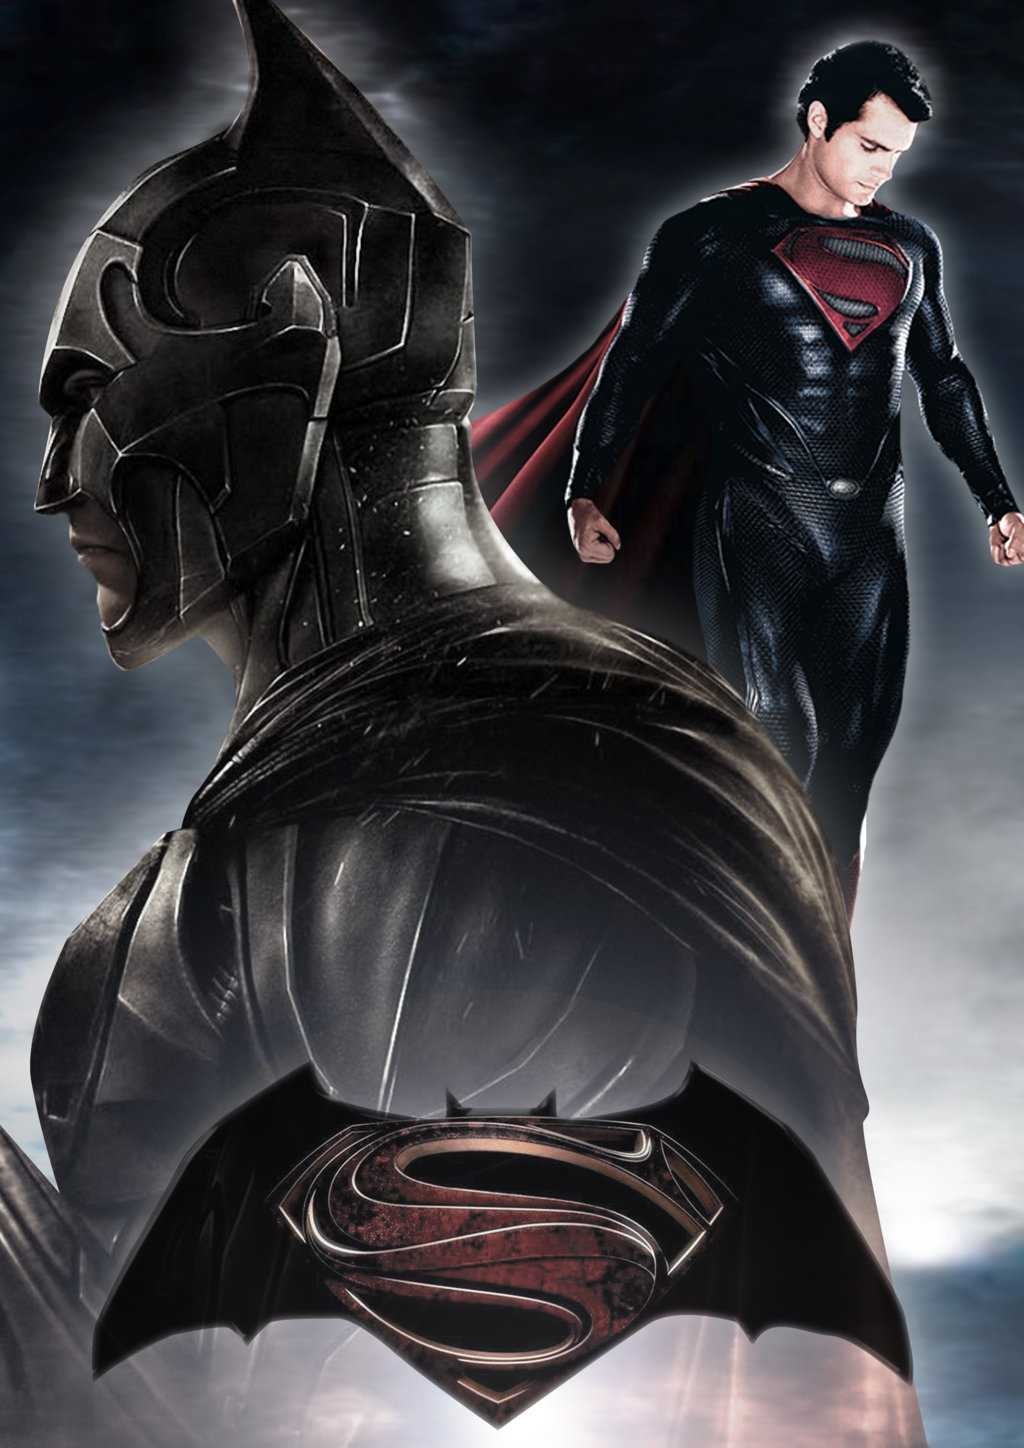 Download Batman Vs Superman Wallpaper Images #y3vn2 » ansorwall.com